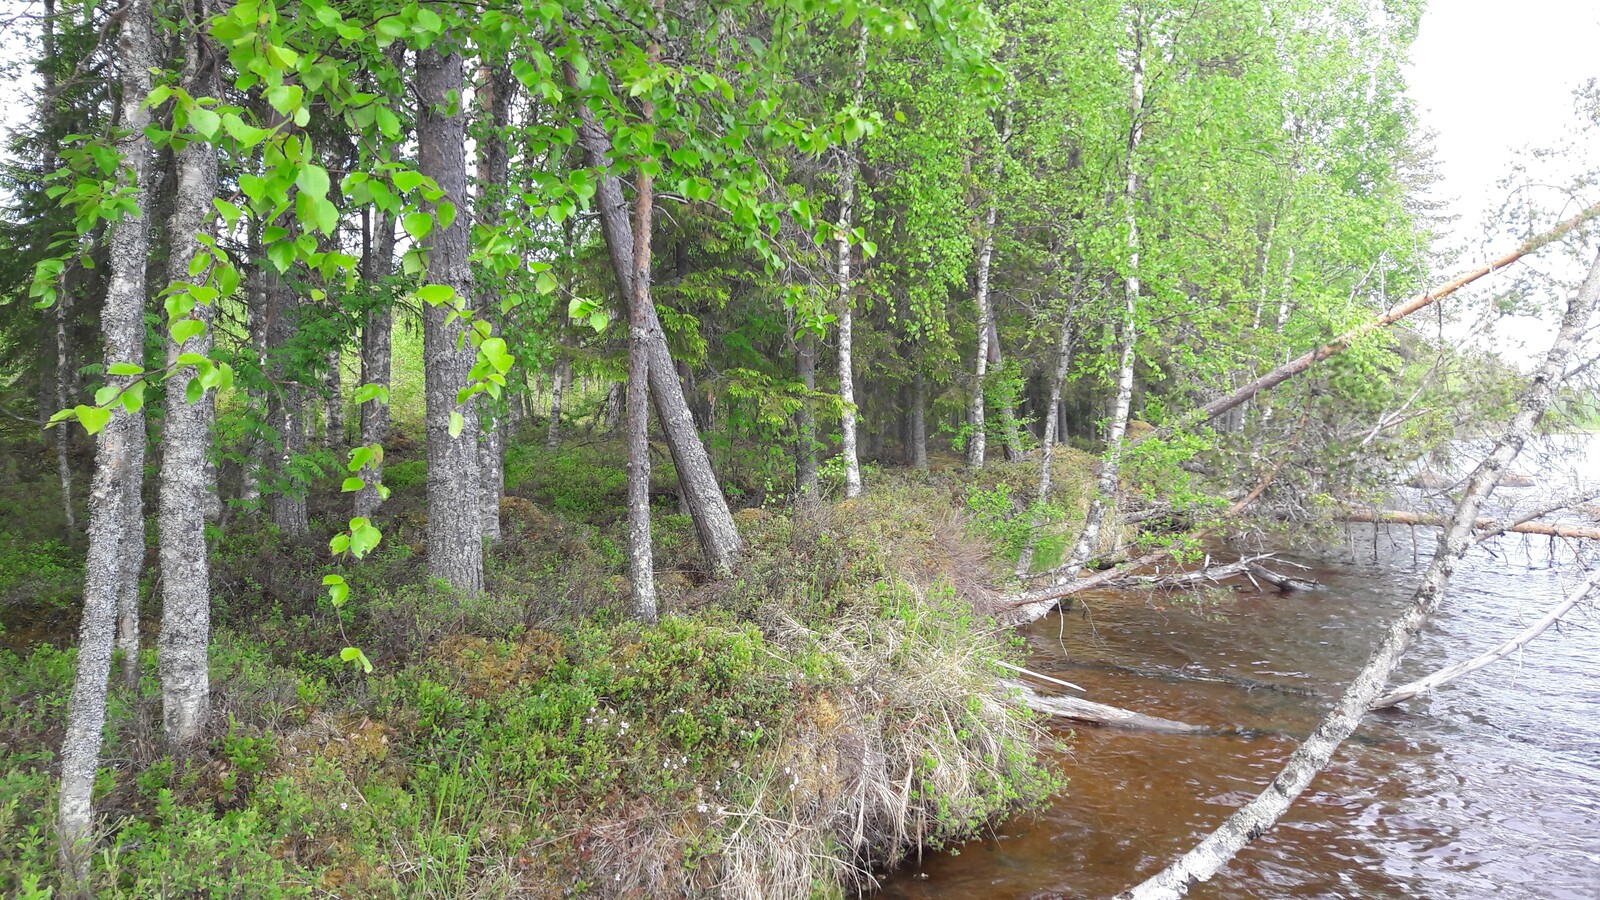 Kesäinen sekametsä reunustaa järveä. Rantatörmällä kasvavia puita on kaatunut veteen.